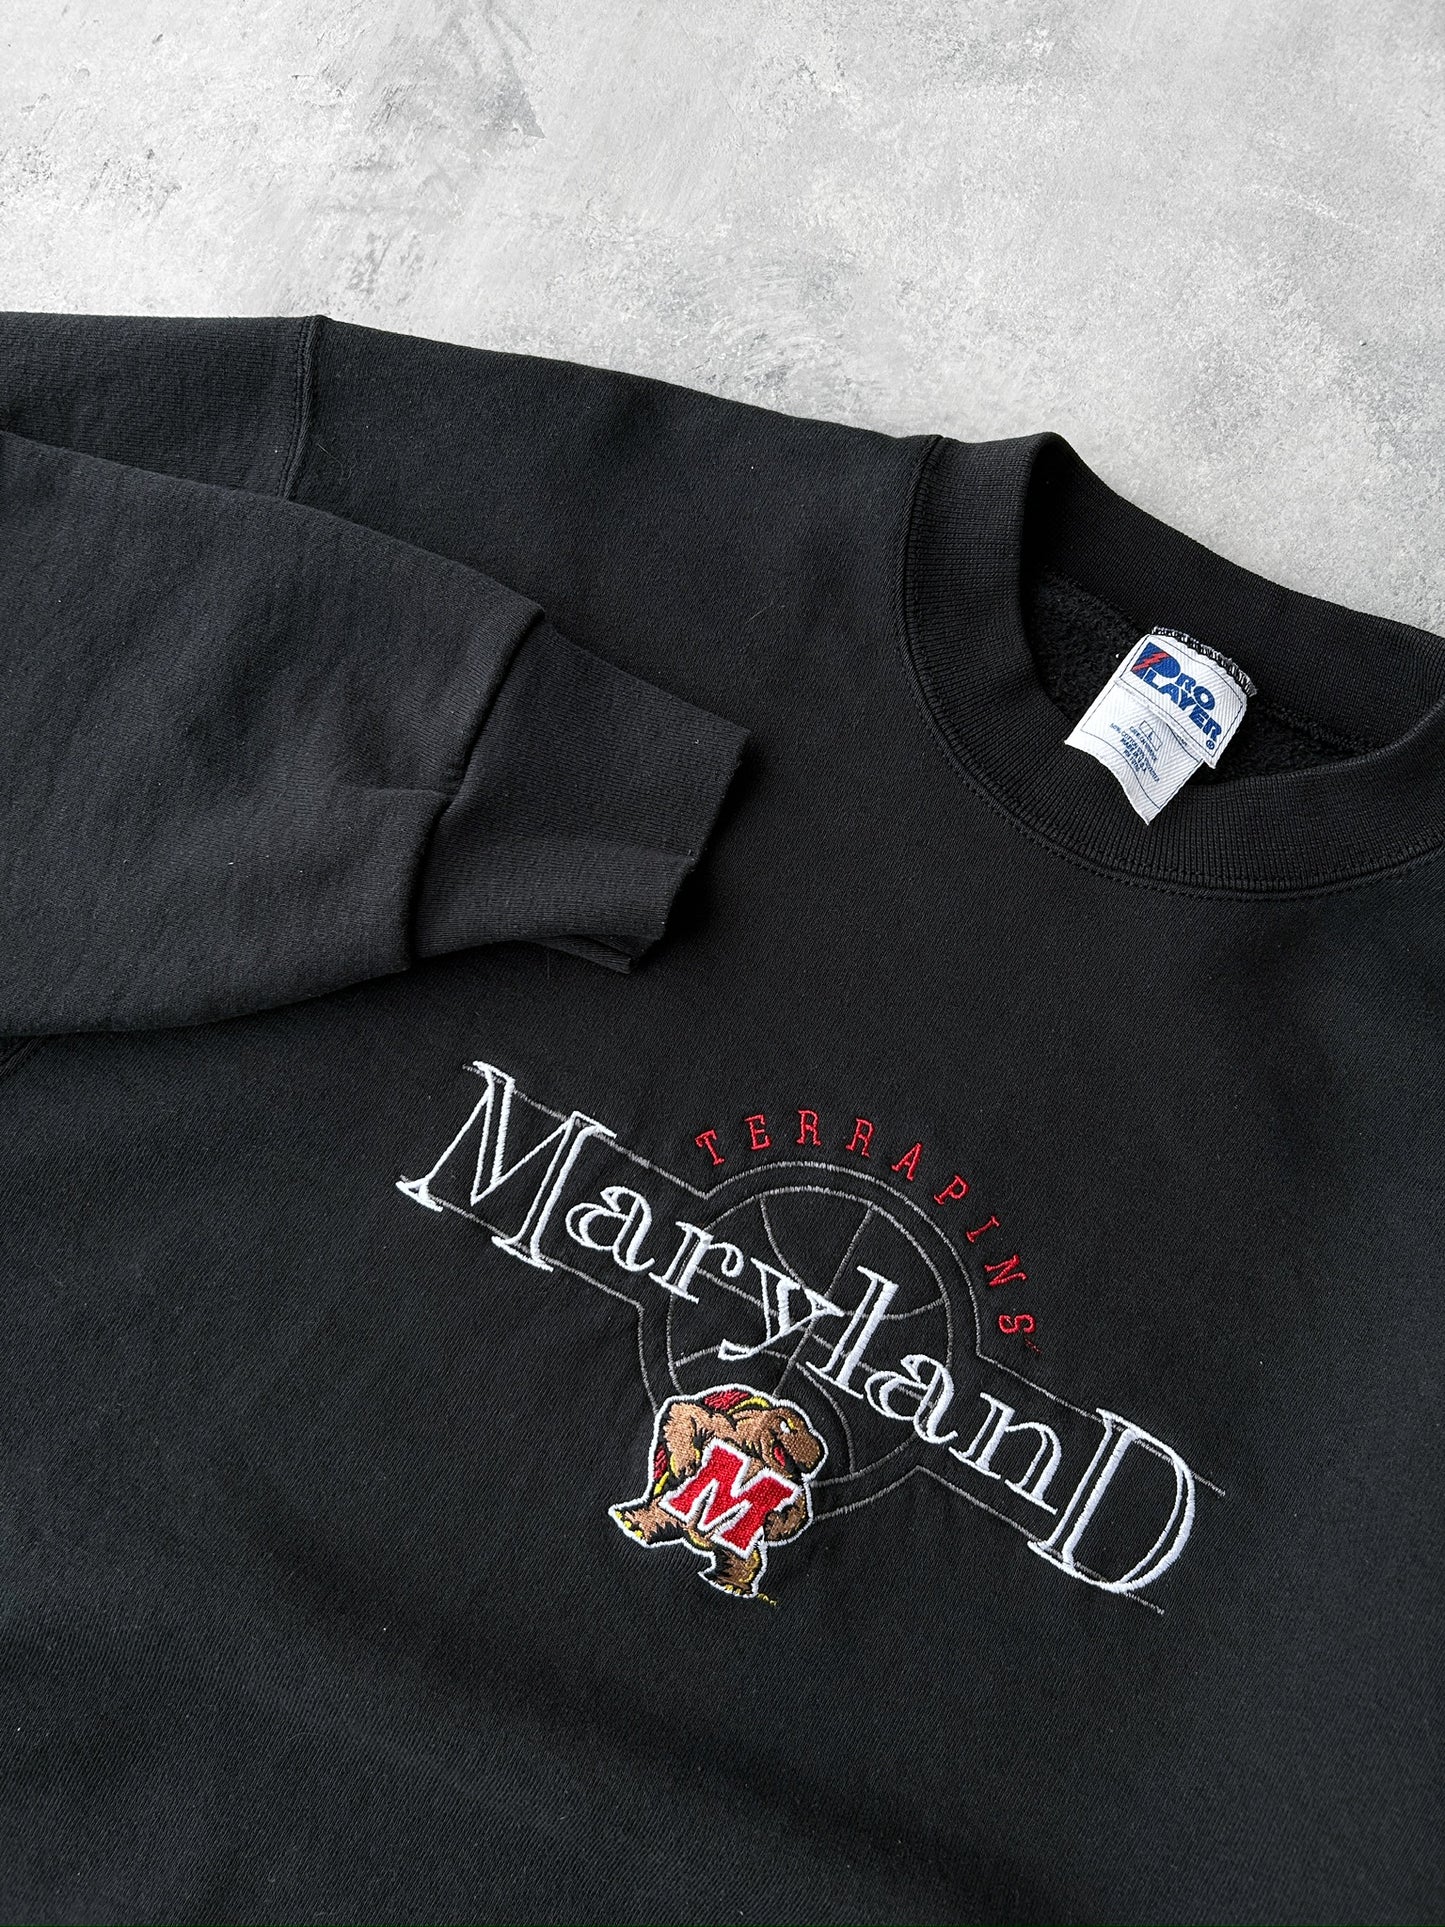 University of Maryland Sweatshirt 90's - Large